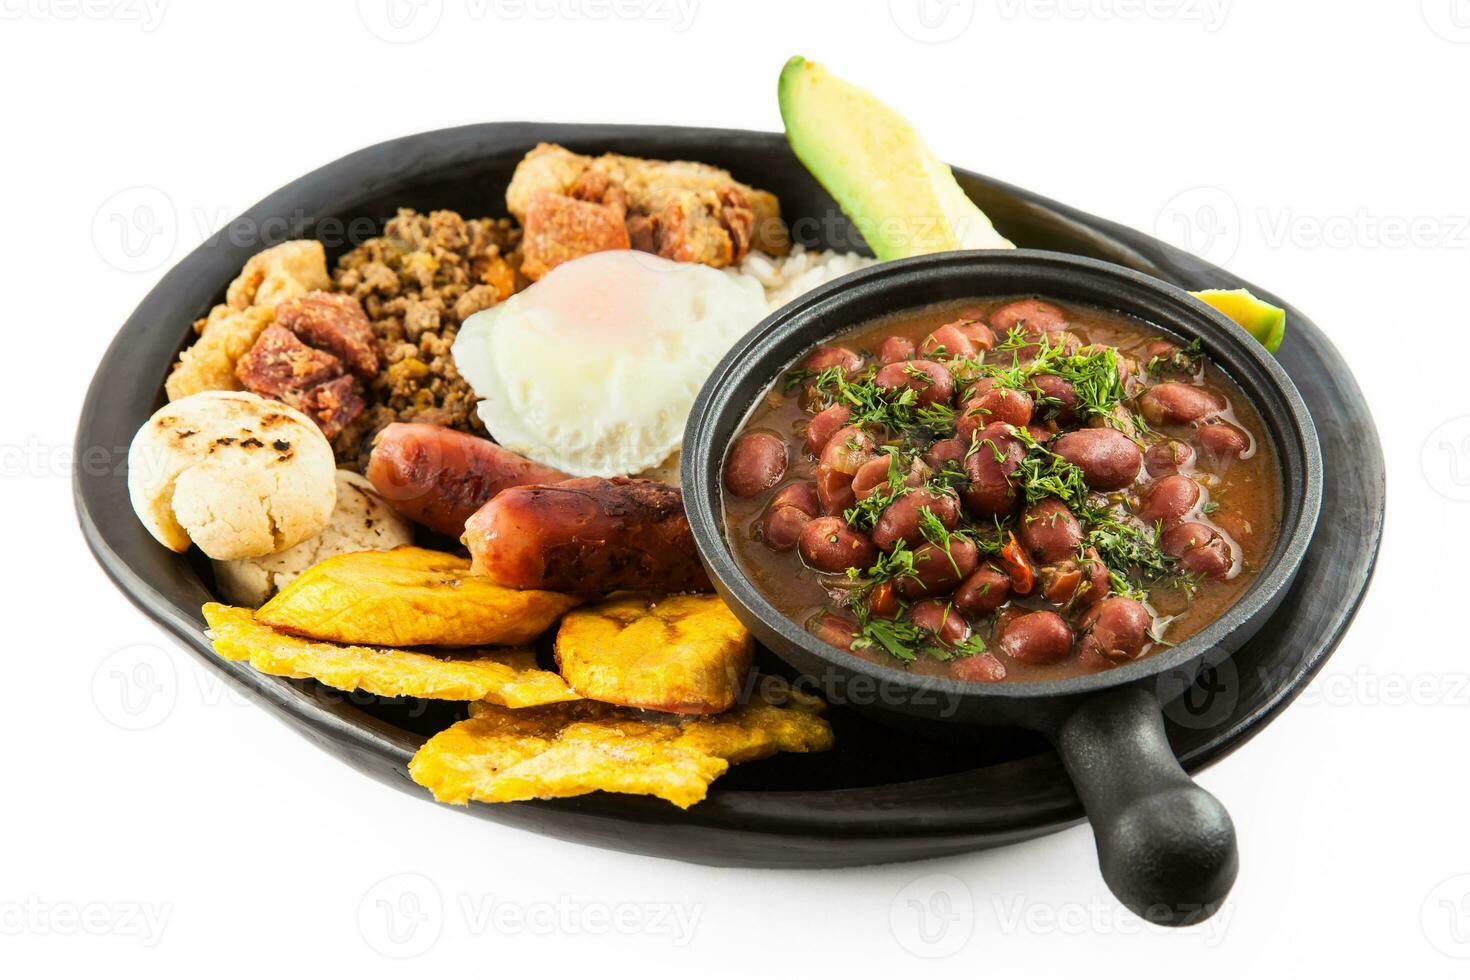 tradicional Colombiana plato llamado banda paisa un plato típico de medellin ese incluye carne, frijoles, huevo y plátano foto